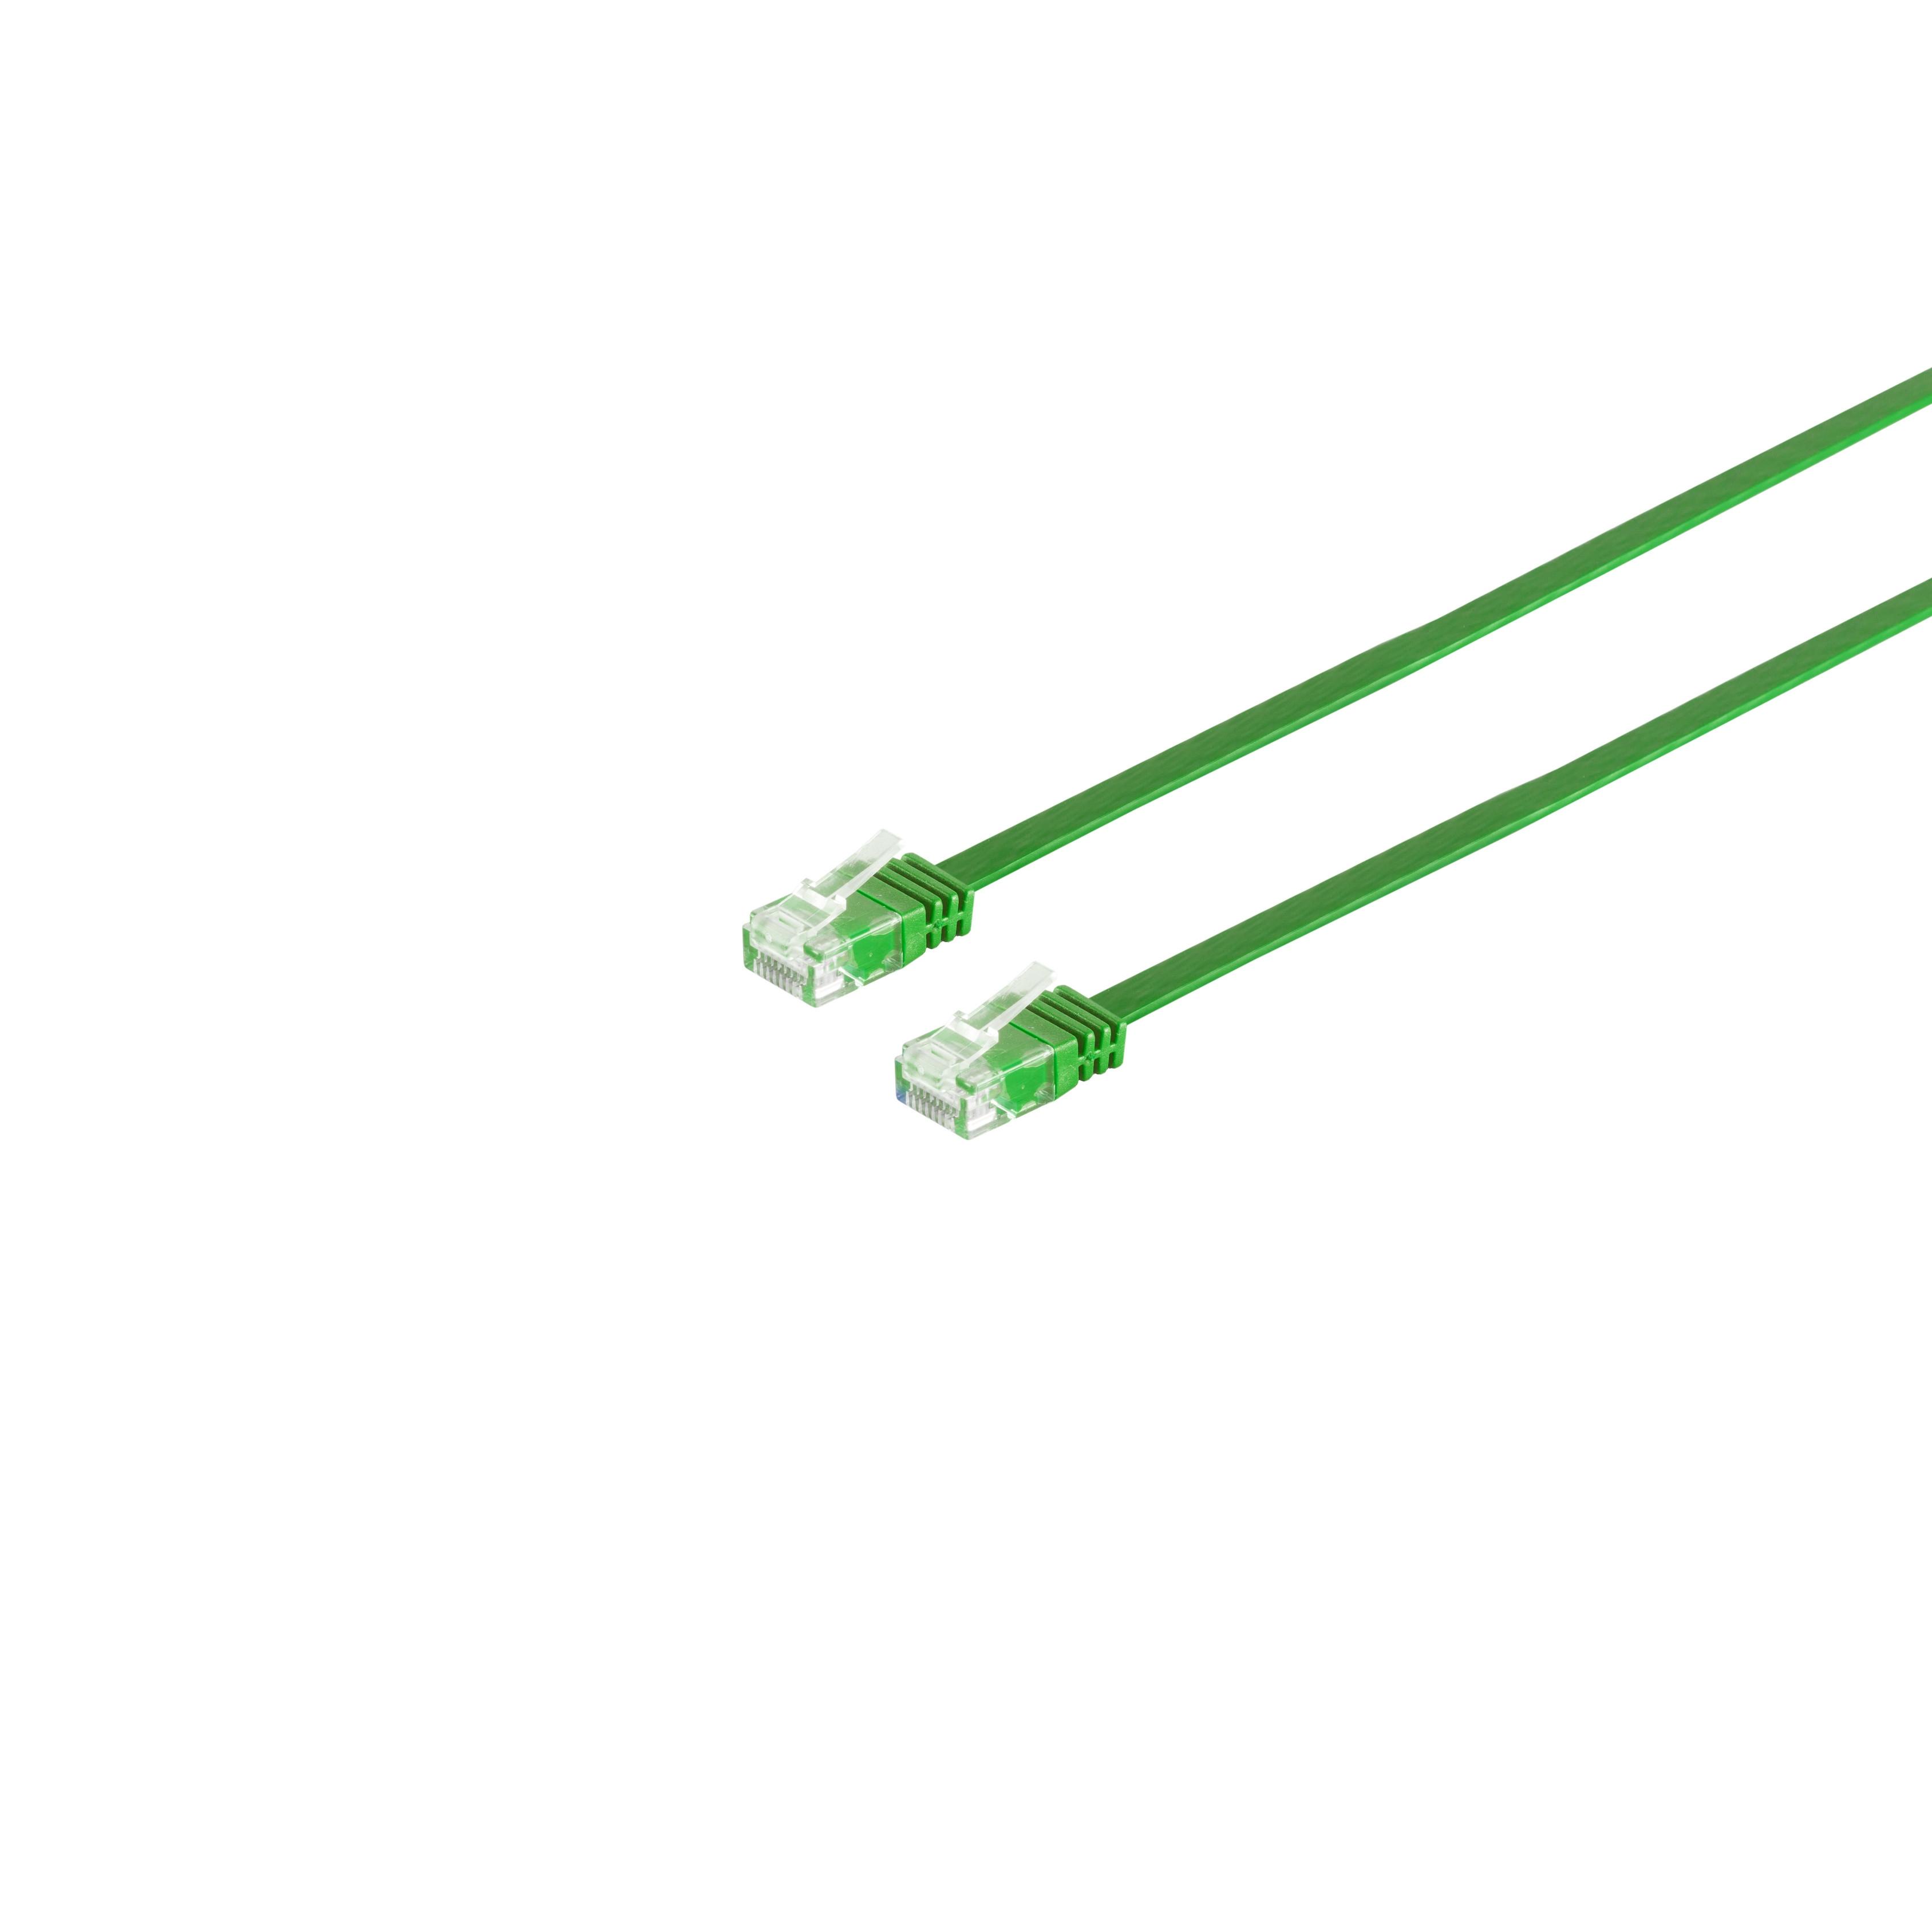 S/CONN MAXIMUM CONNECTIVITY Patchkabel-Flachkabel grün 10m, 10 Patchkabel 6 RJ45, slim U/UTP m cat